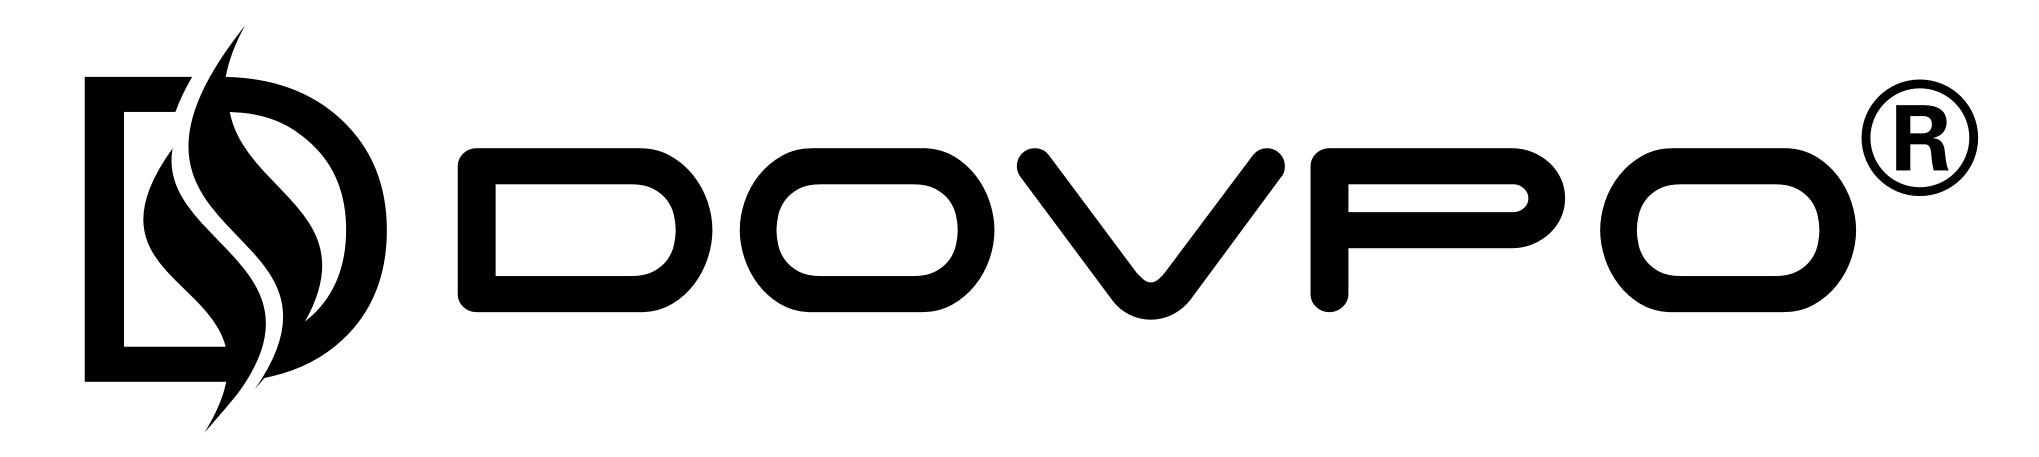 Shenzhen Dovpo Technology . Logo